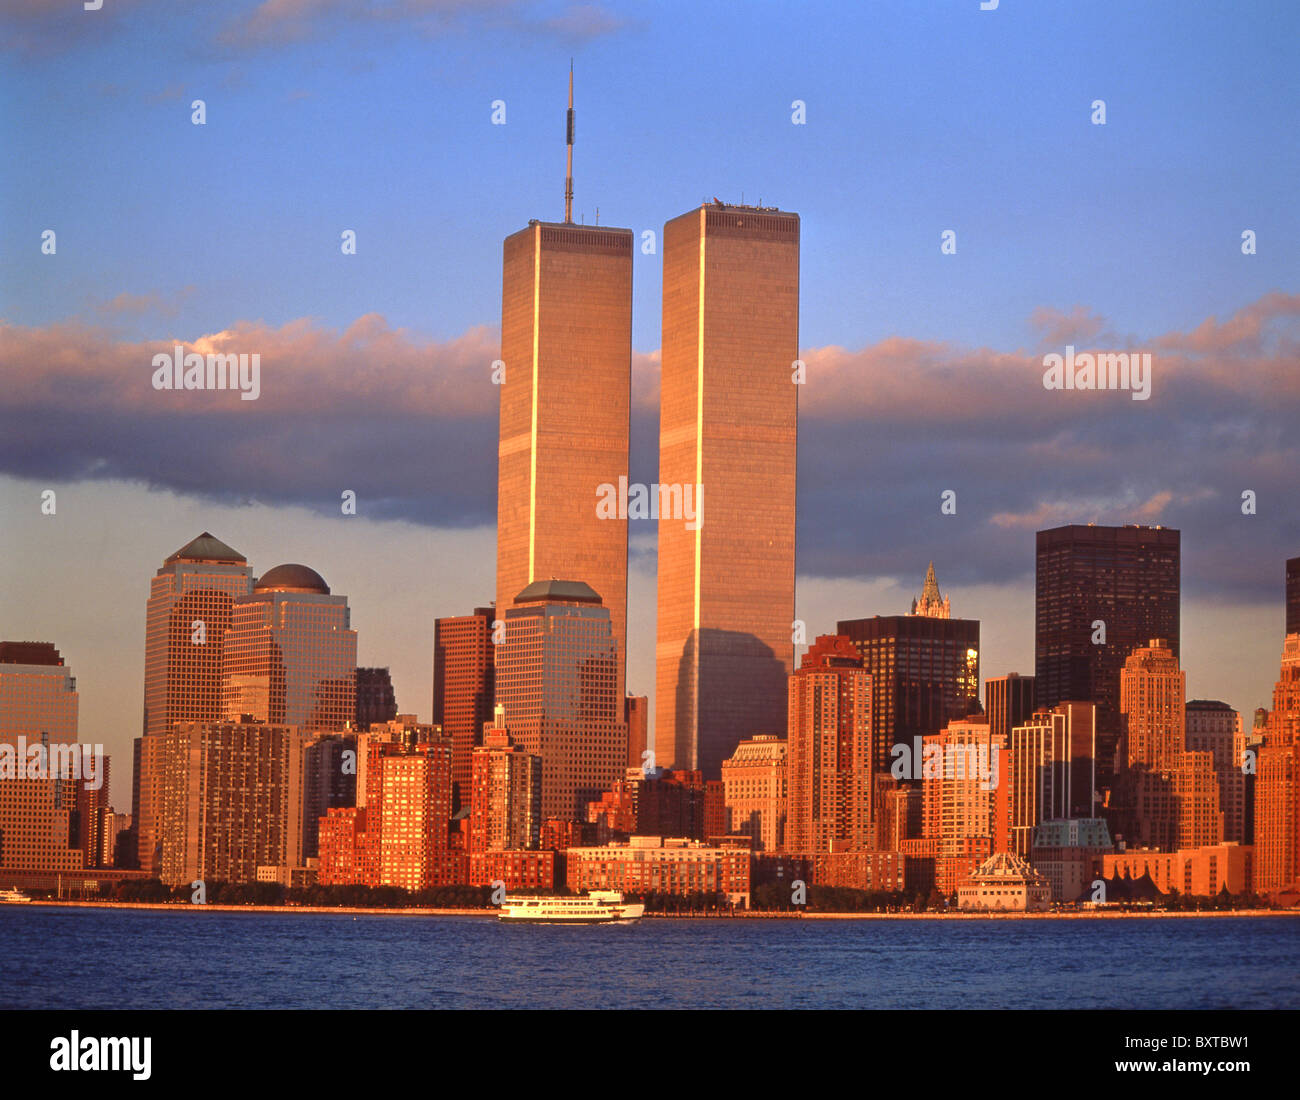 Blick auf die Stadt vom Hafen bei Sonnenuntergang (Anzeige Twin Towers), Manhattan, New York, New York Staat, Vereinigte Staaten von Amerika Stockfoto